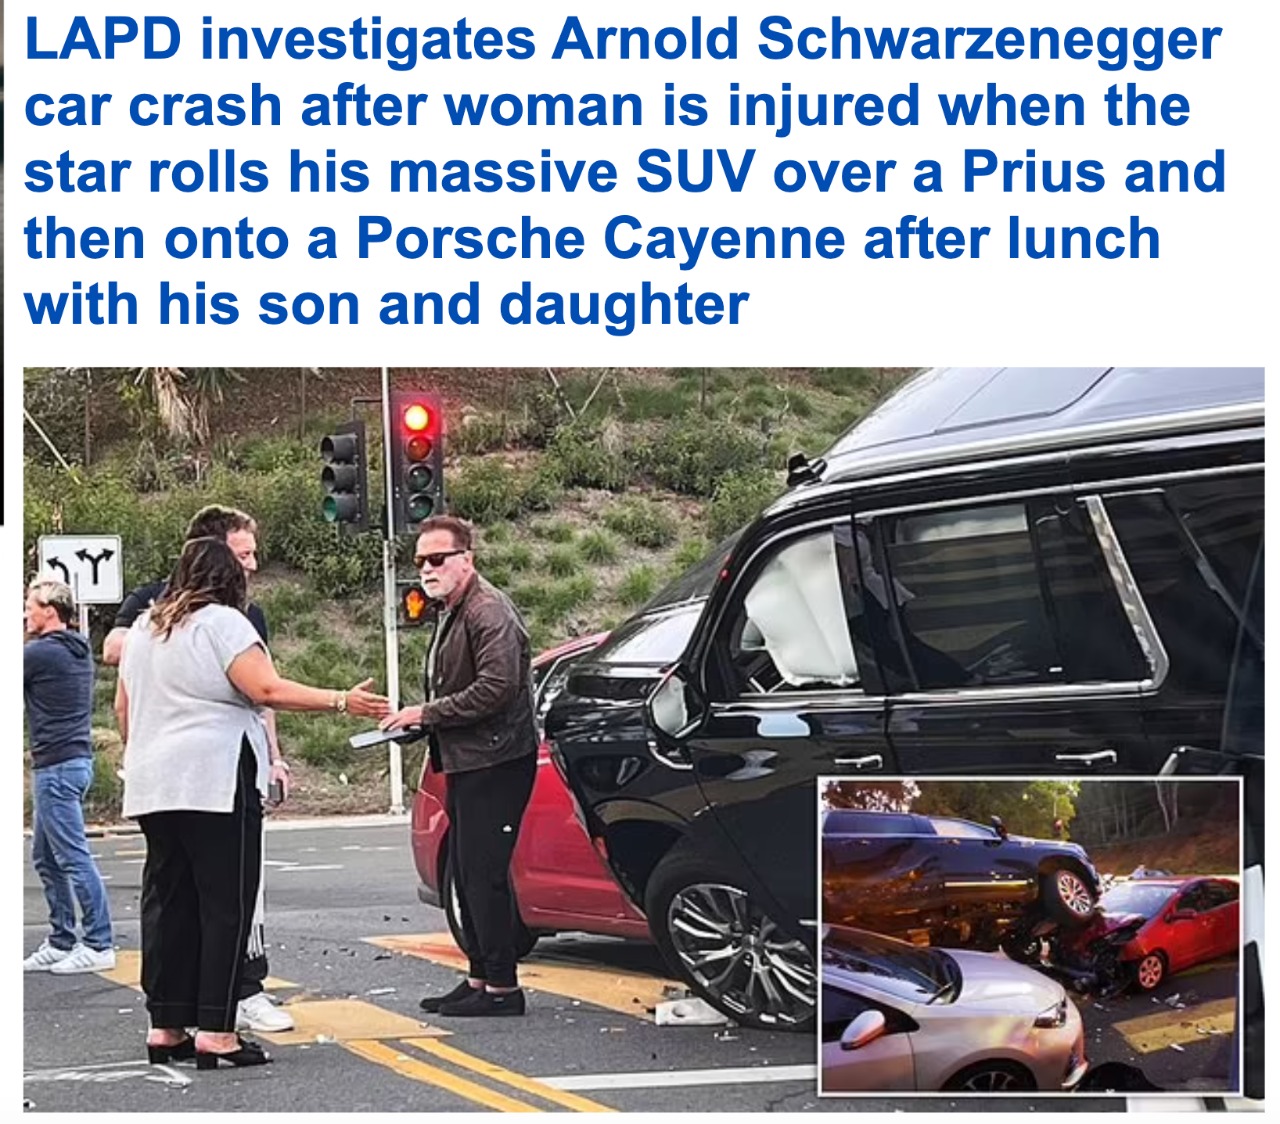 شاهد.. الفنان الأمريكي الشهير " أرنولد شوارزنيجر" يتعرض لحادث وسيارته تصعد فوق مركبة امرأة